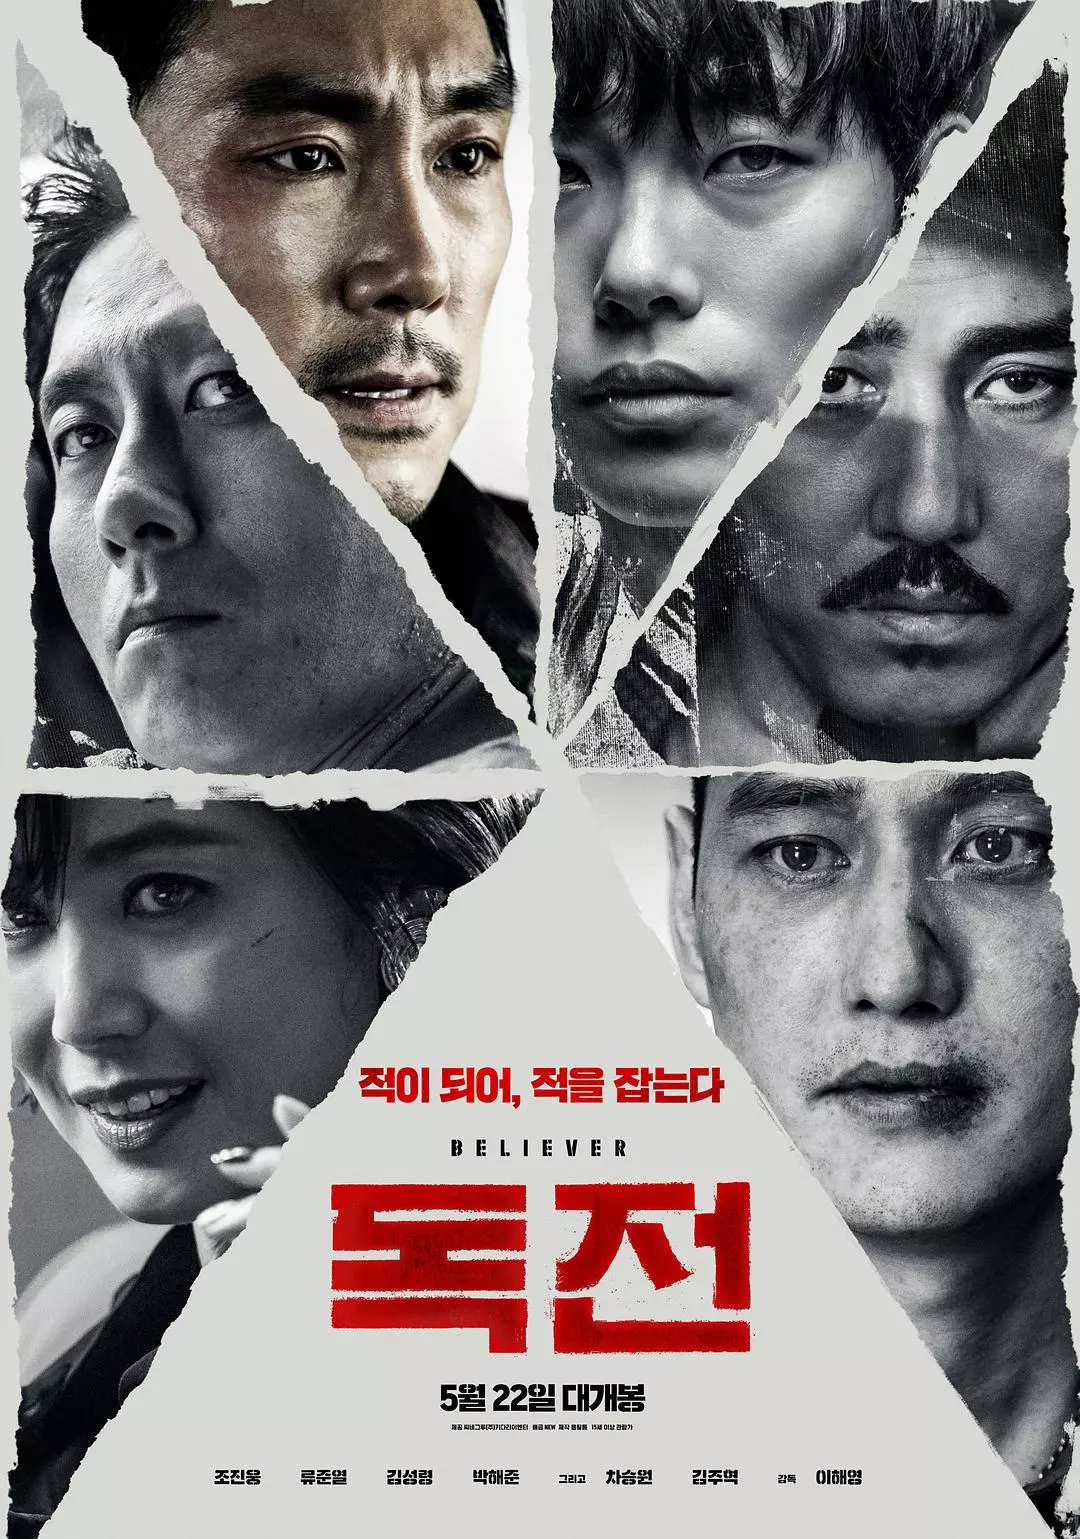 韩国翻拍中国电影,还拍成了19禁票房冠军!